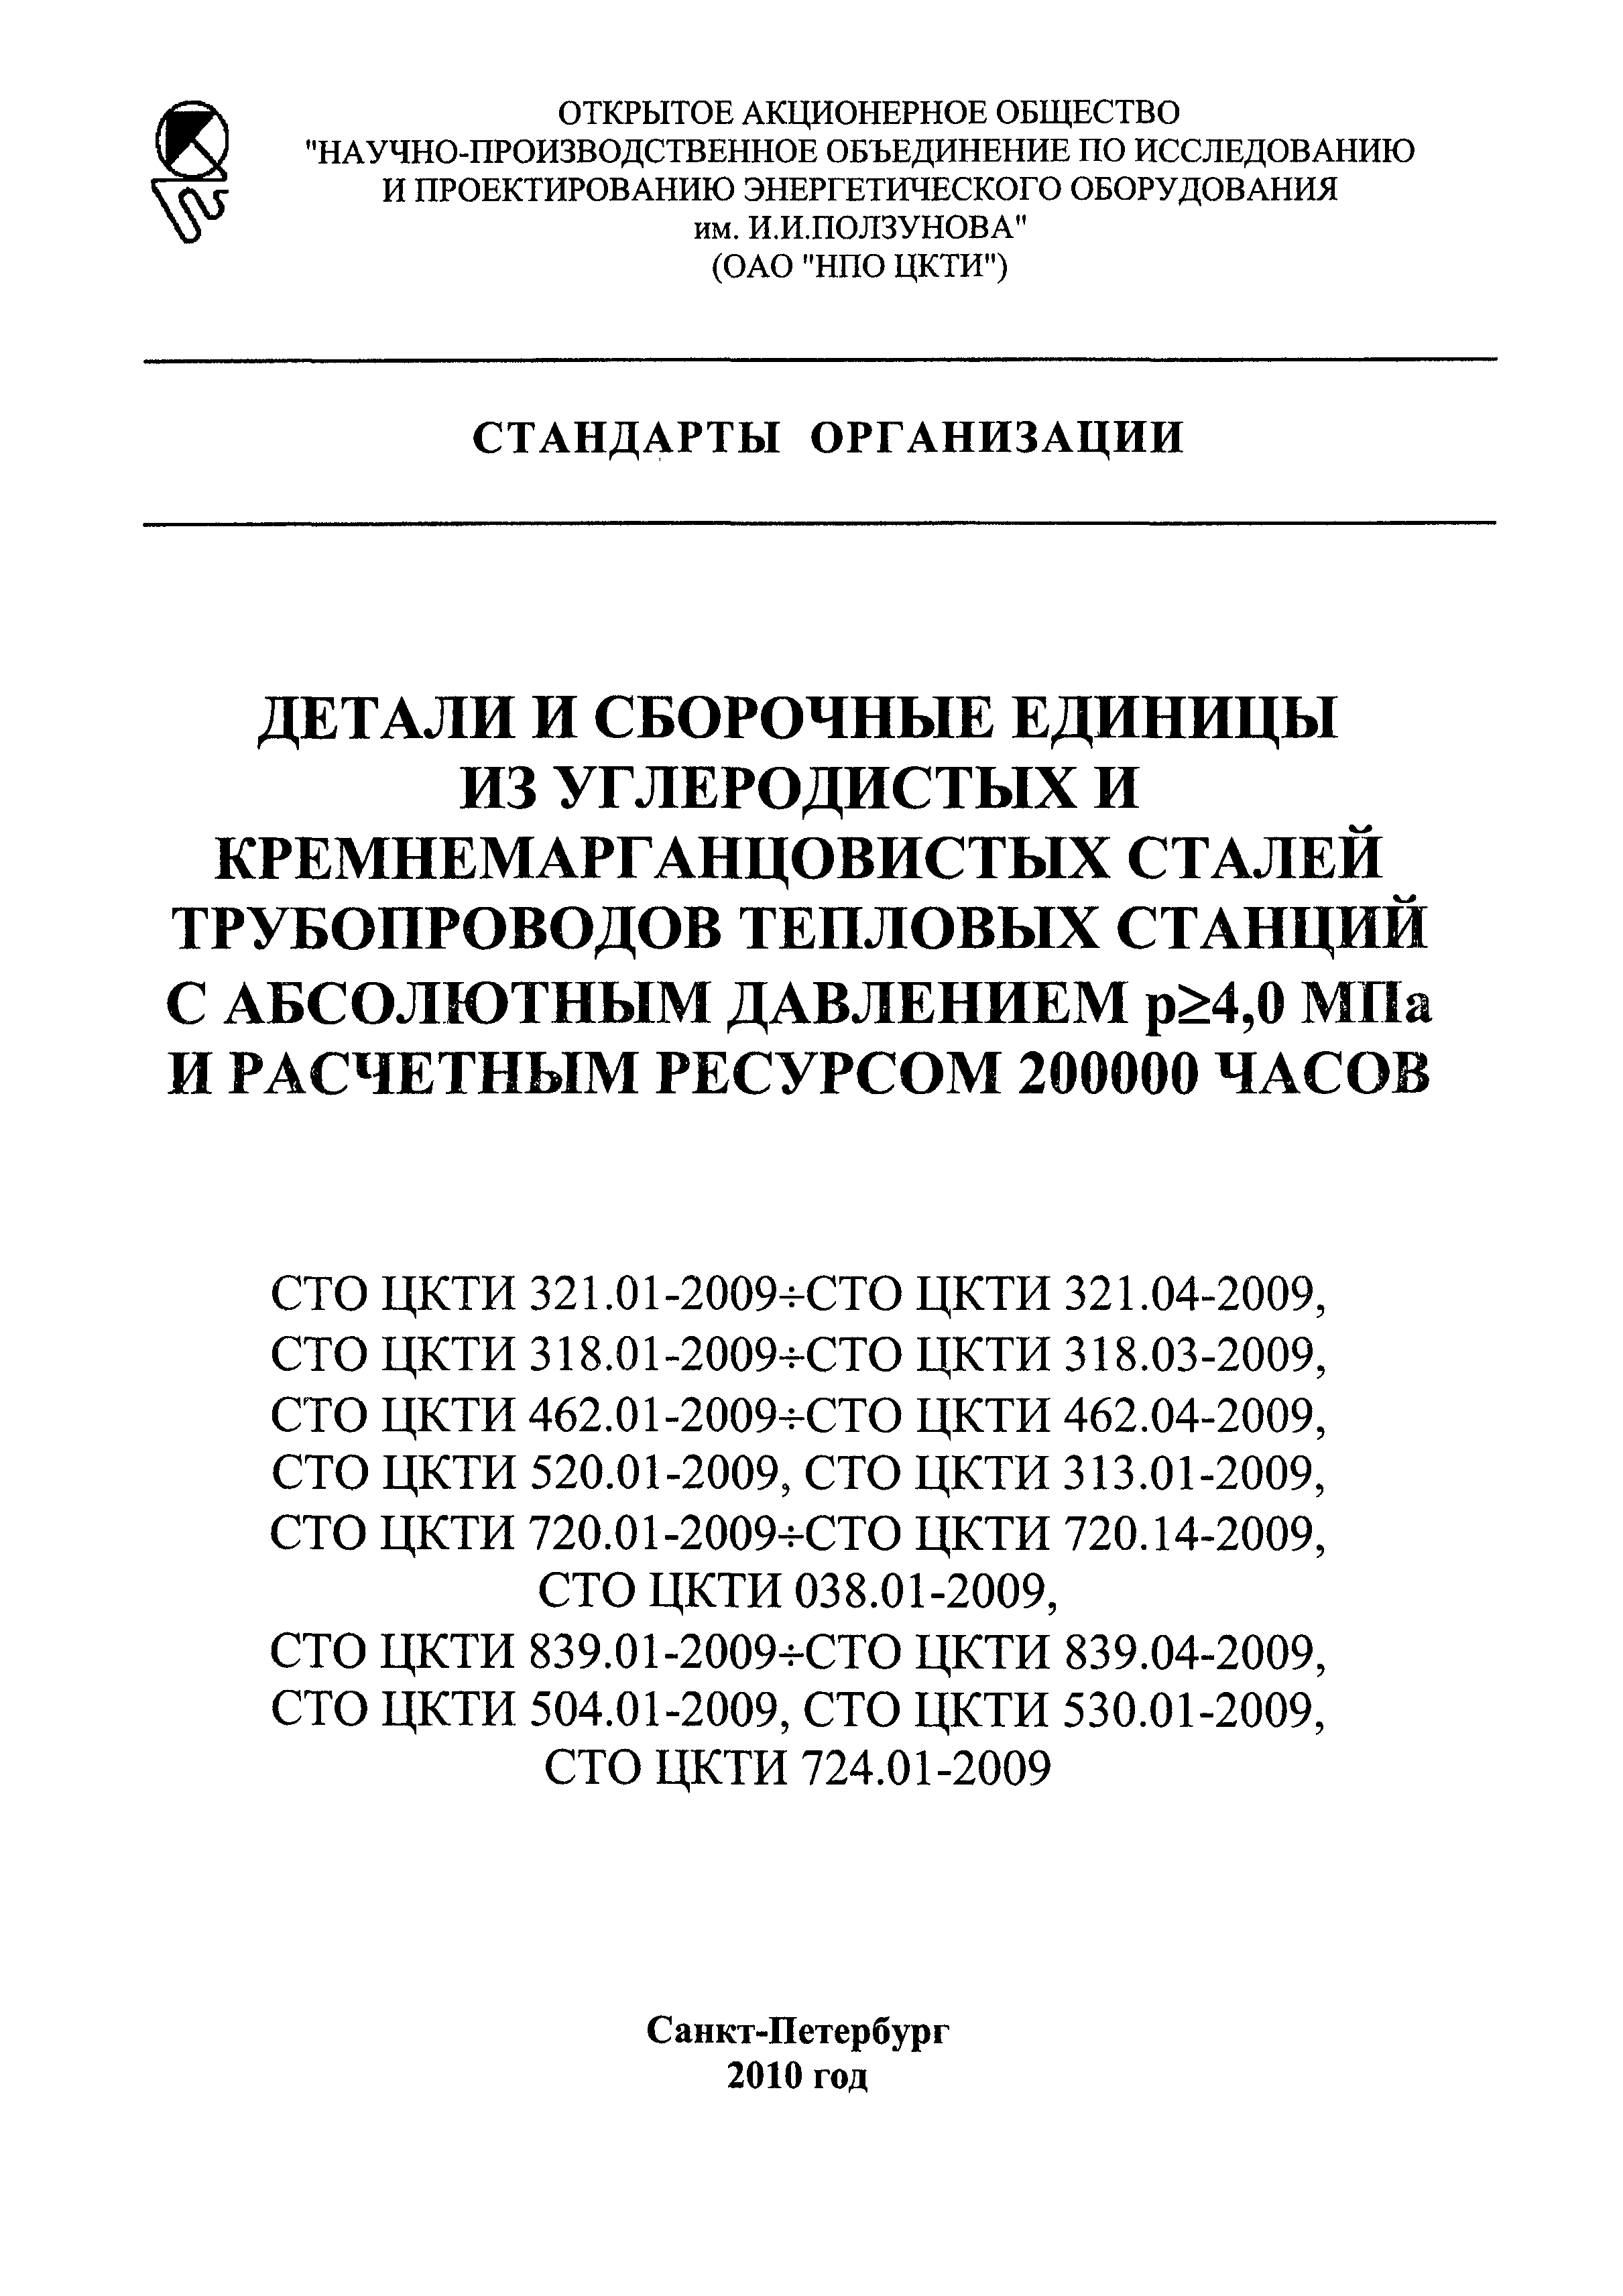 СТО ЦКТИ 720.09-2009